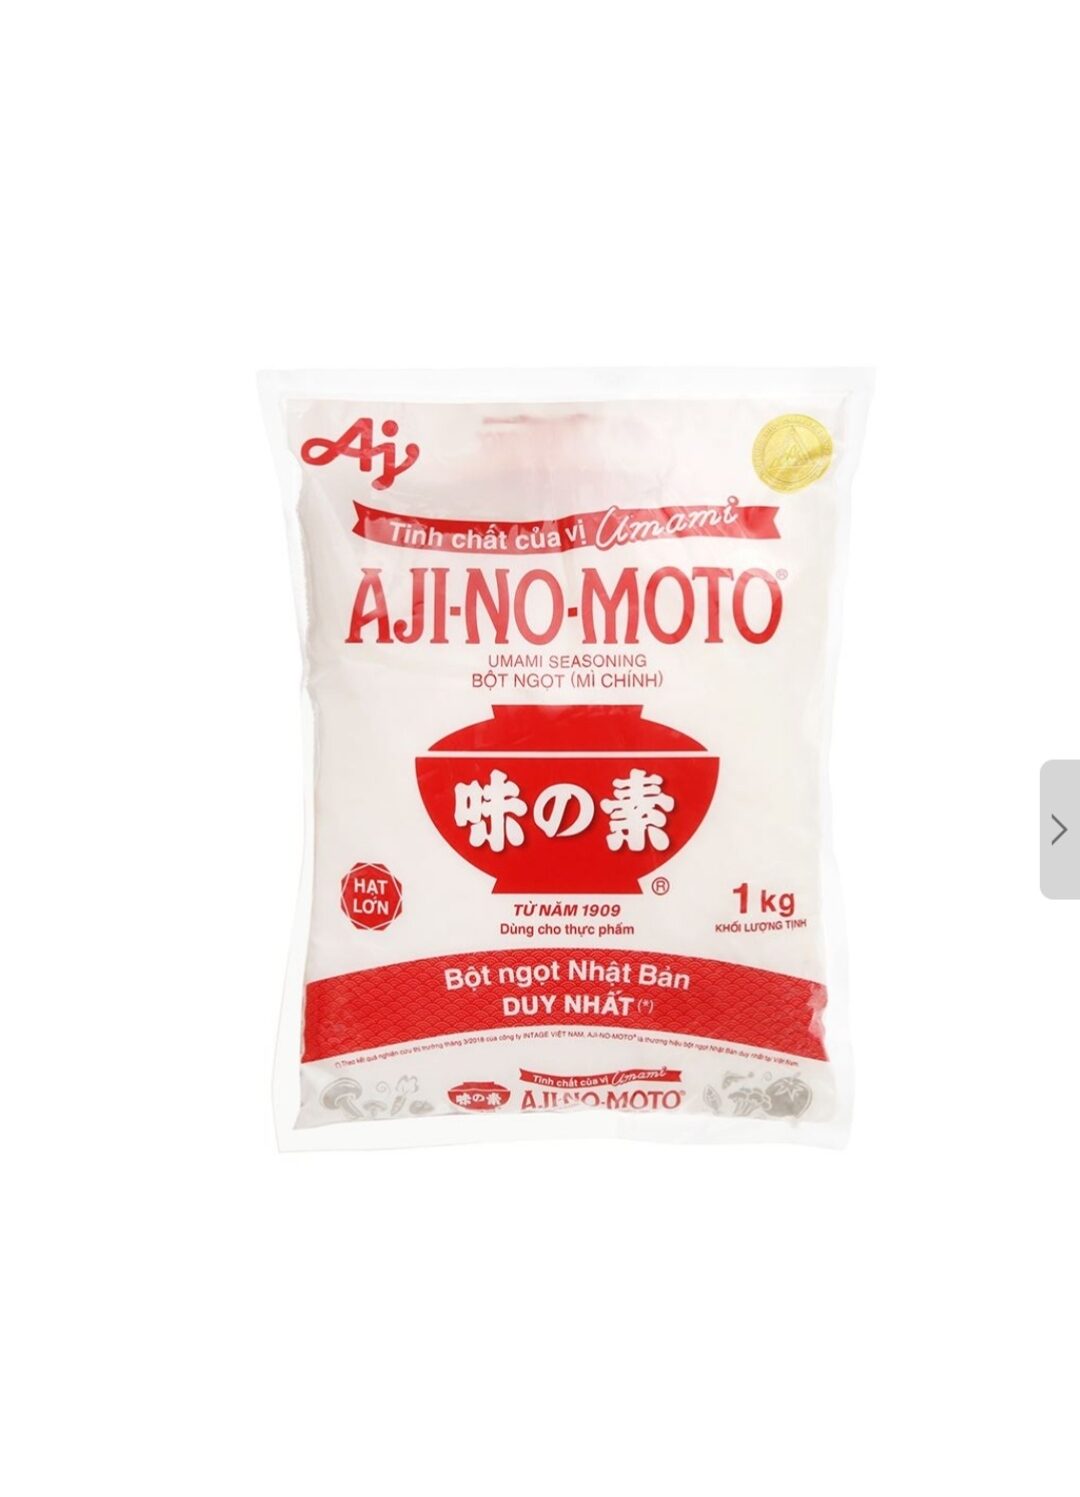 Bột ngọt Ajinomoto bột ngọt mì chính gói 1 kg